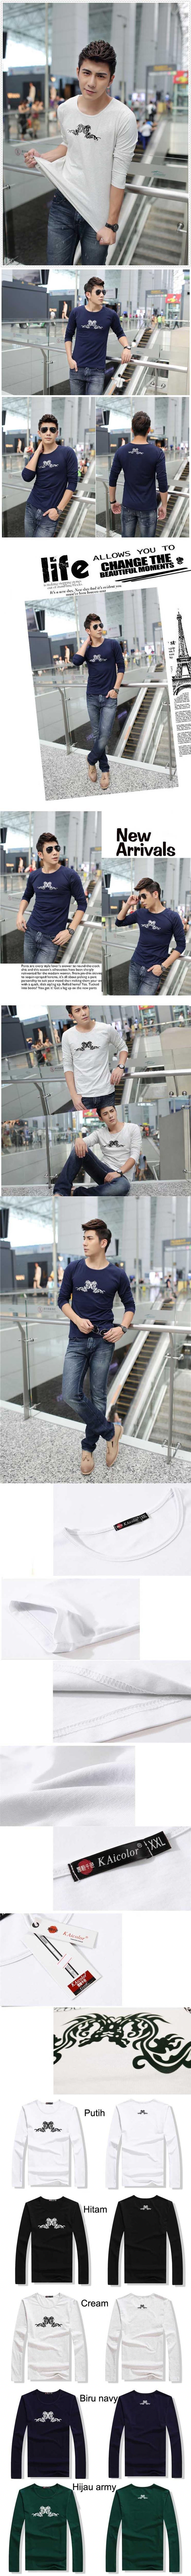 jual kaos pria korea model lengan panjang dengan bentuk kerah O, temukan koleksi kaos pria model korea terlengkap dan terbaru hanya di store.pakaianfashionpria.com